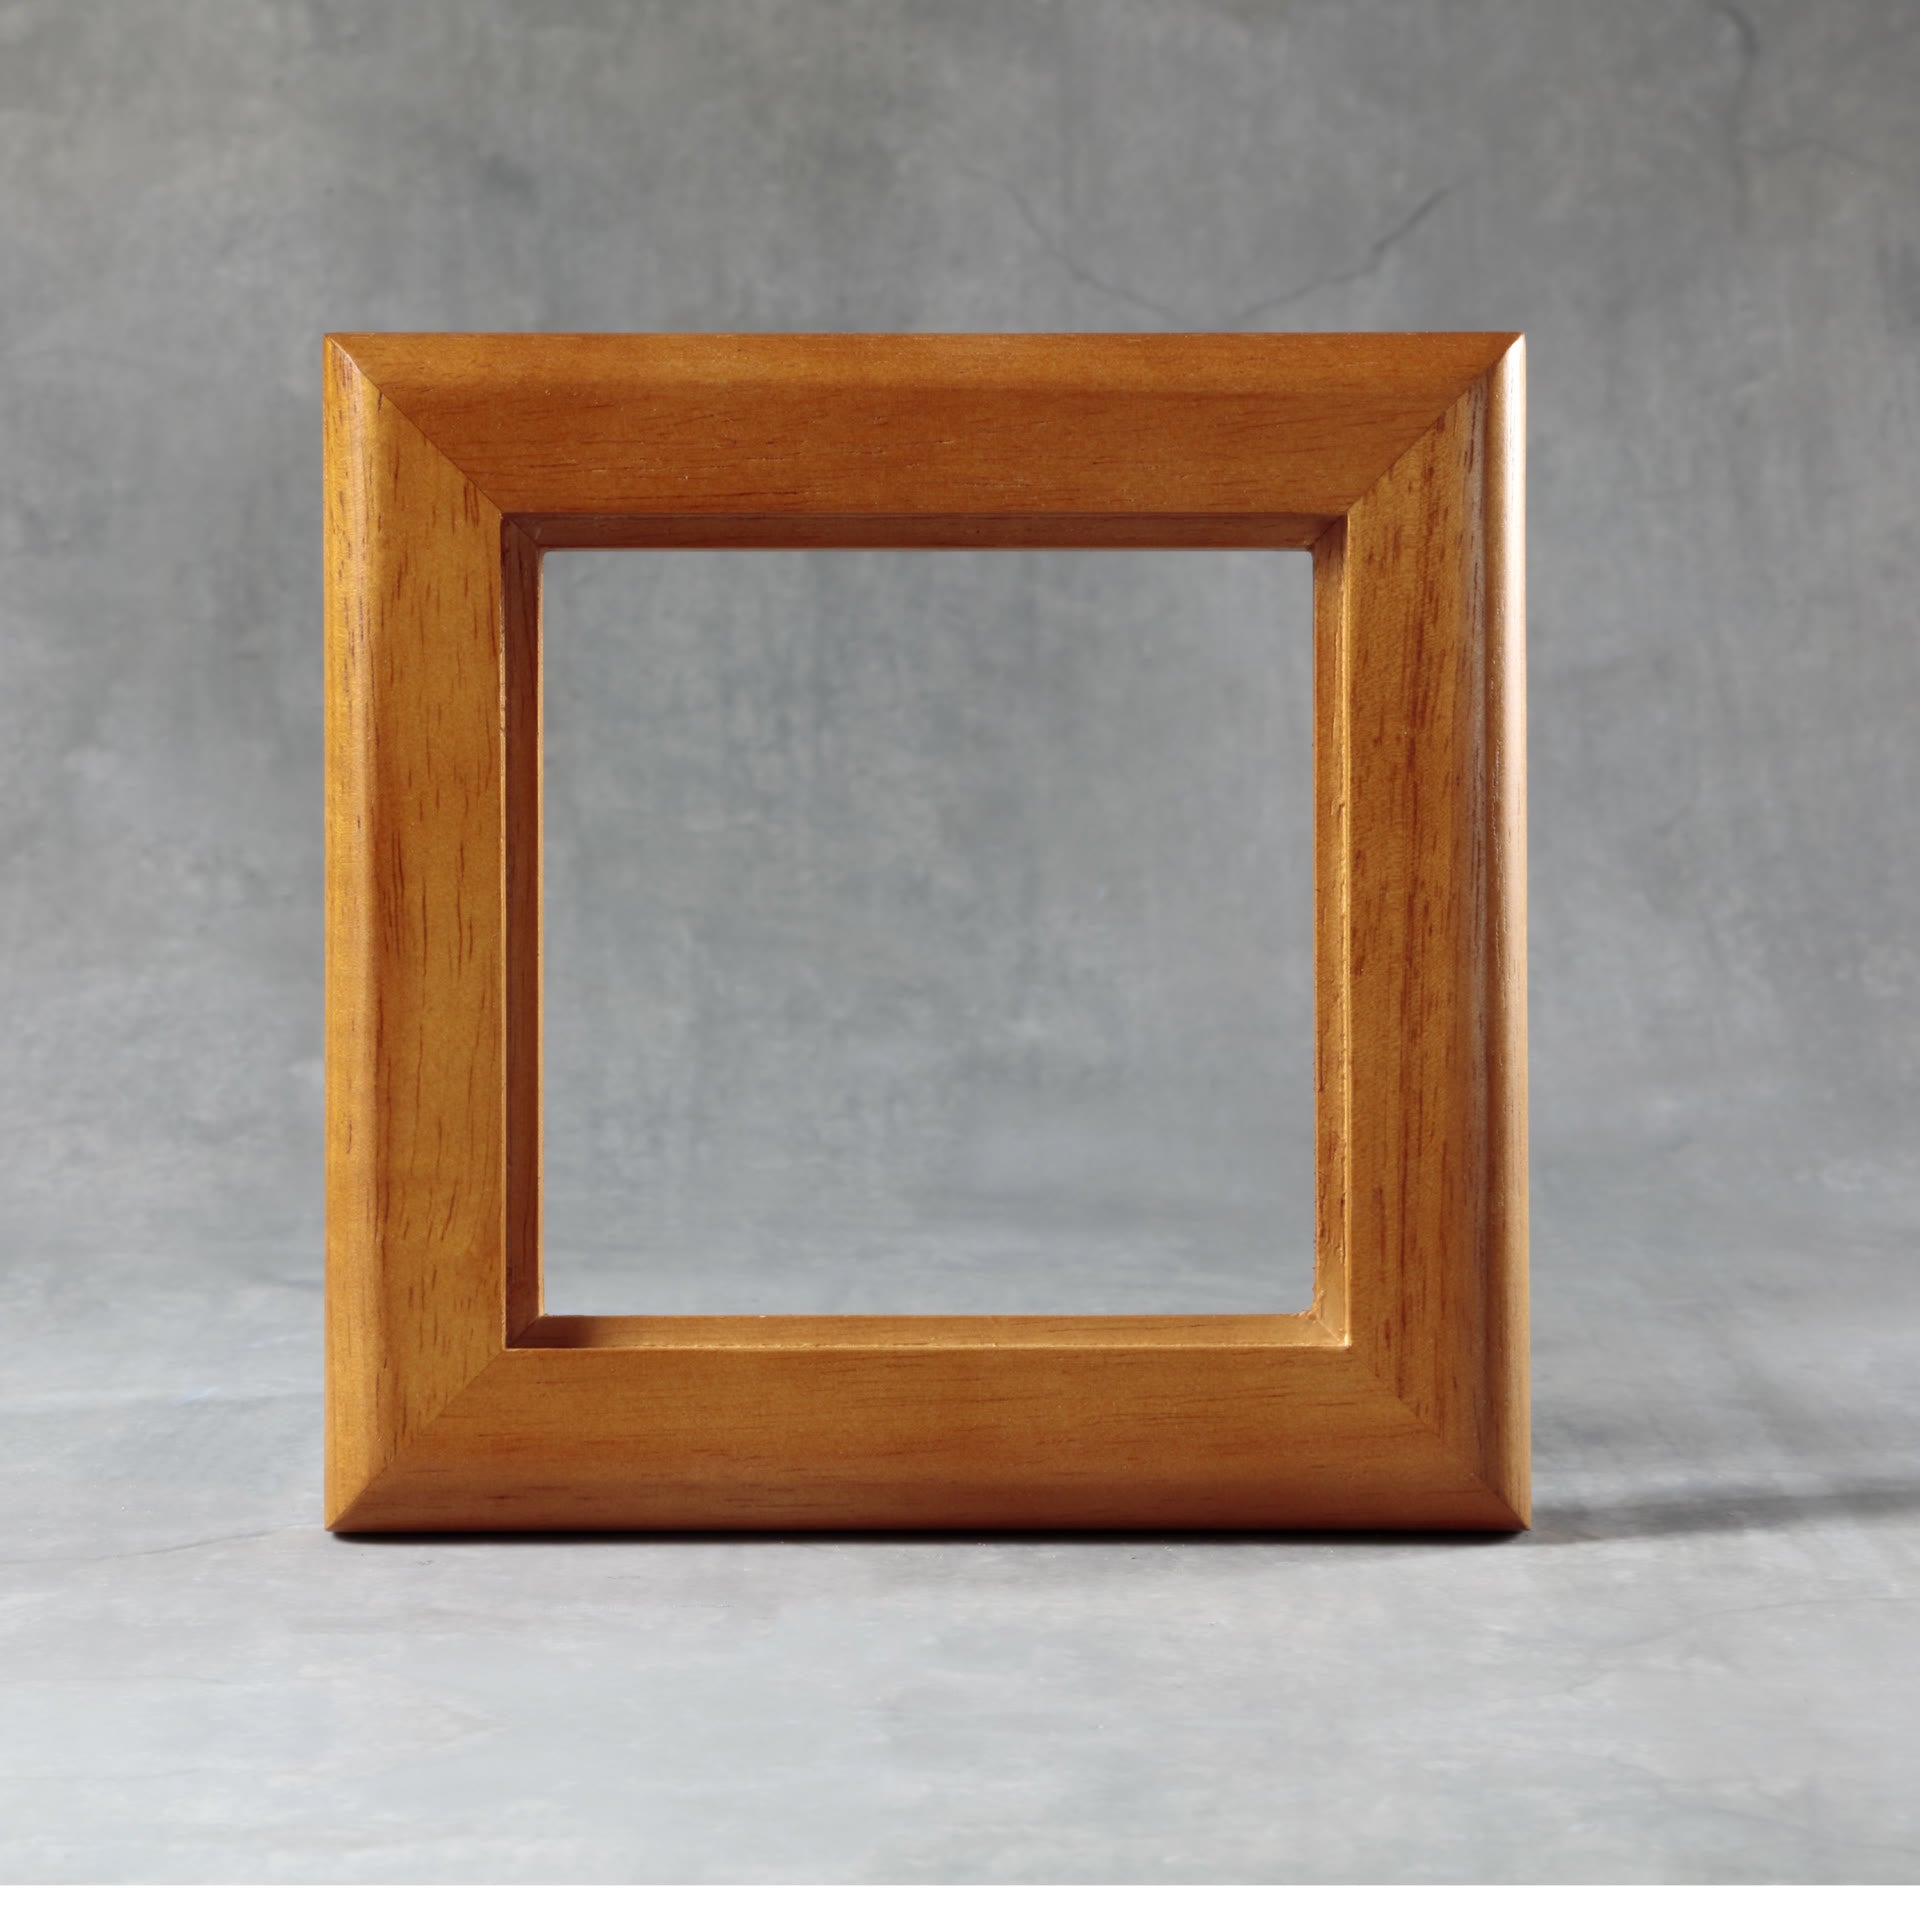 Wood Tile Frame